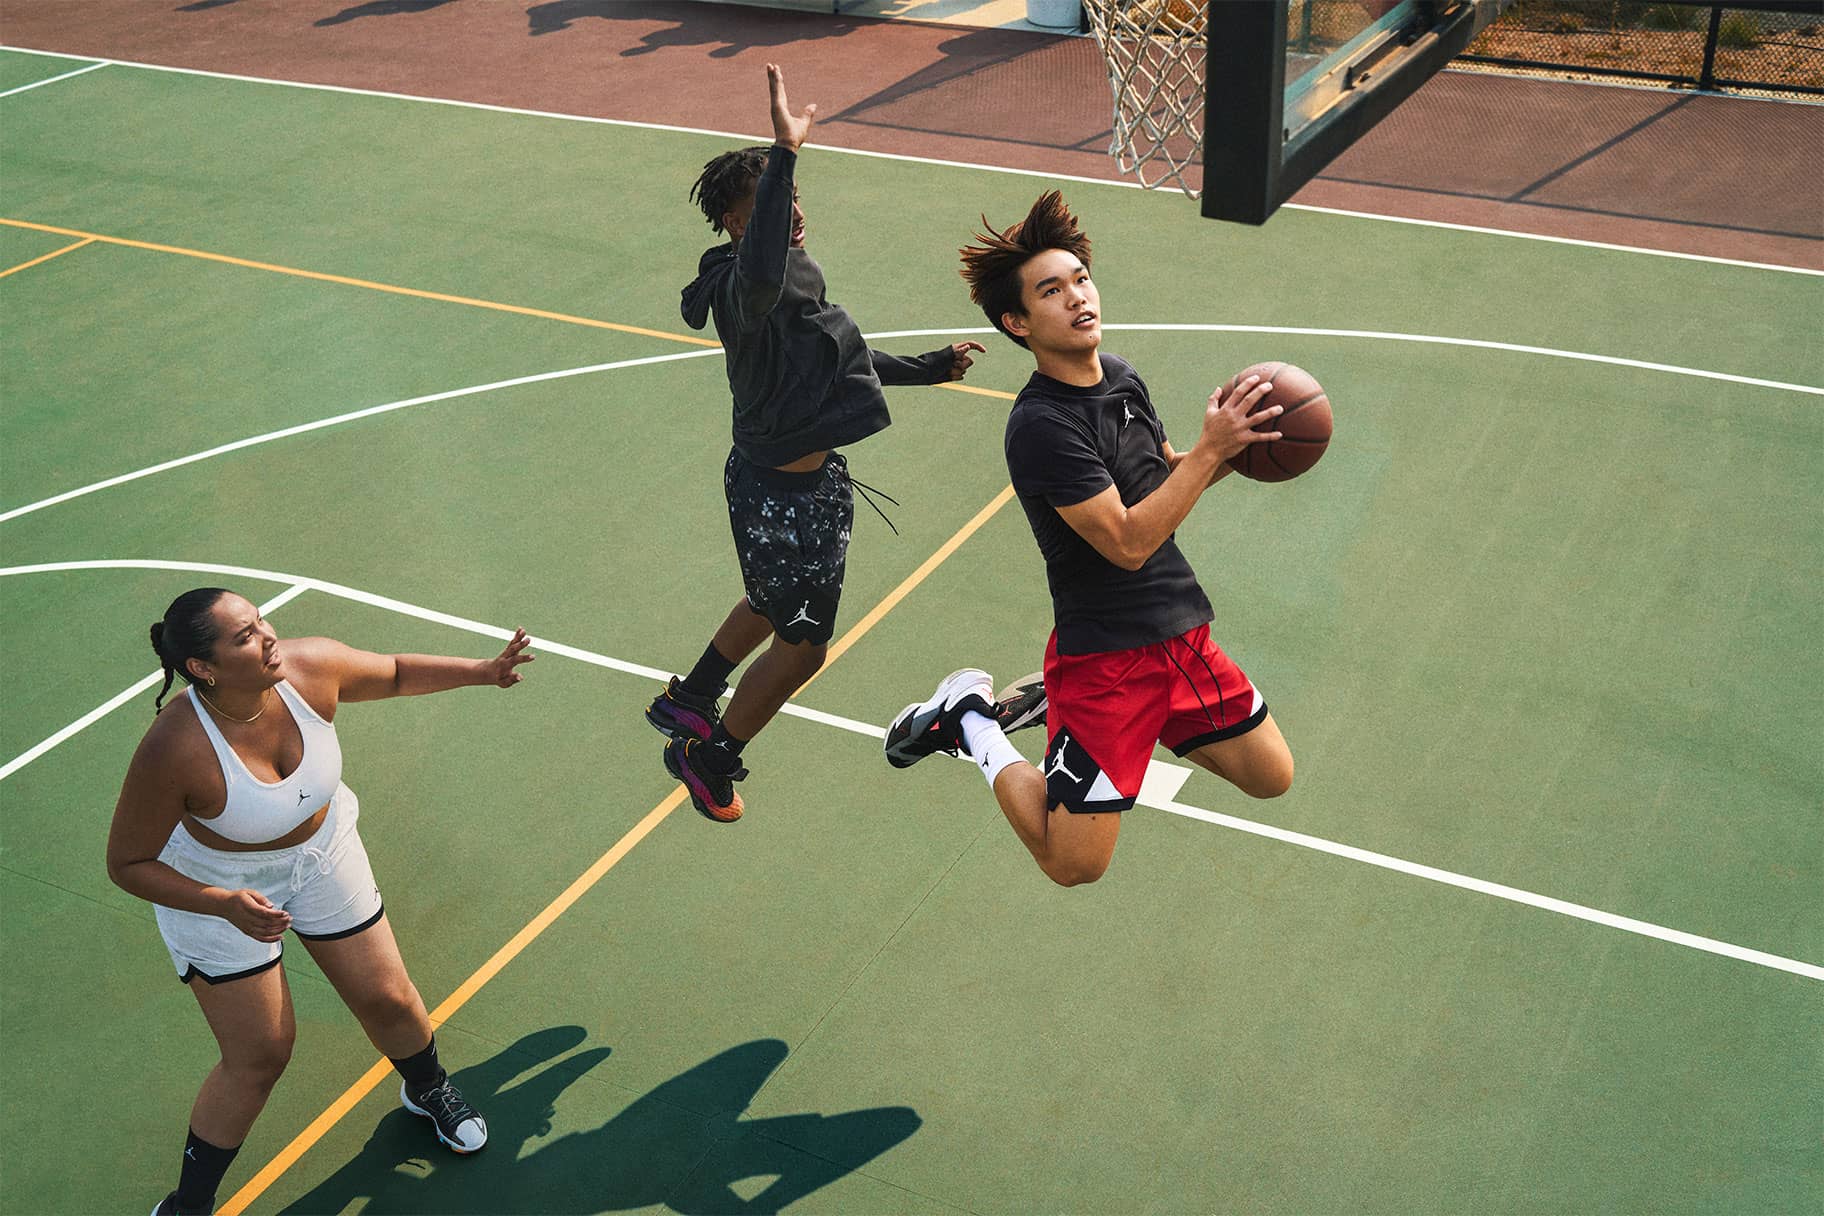 Les cinq bienfaits du basketball selon les experts